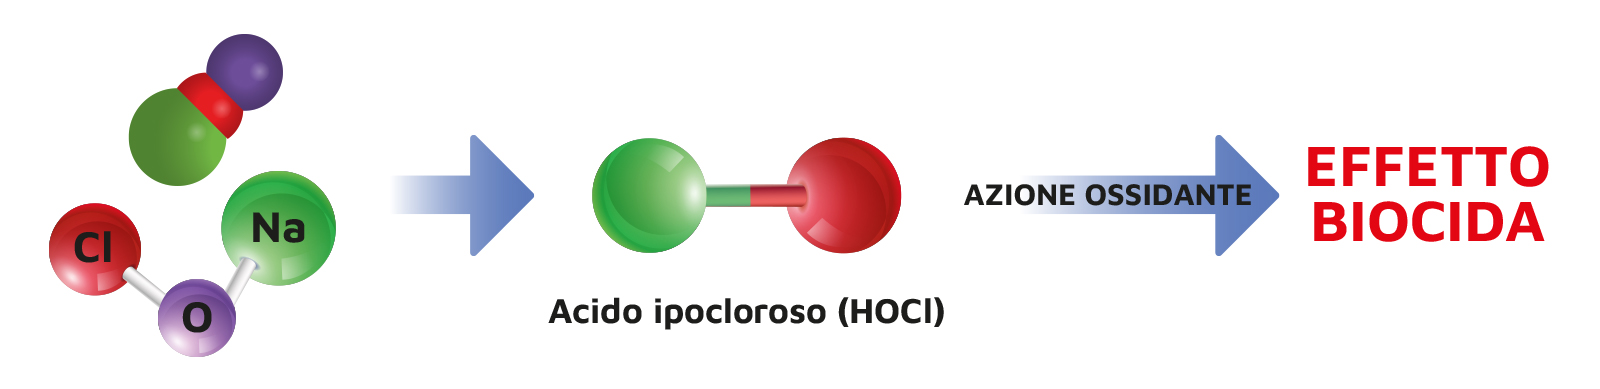 AzioneBiocida